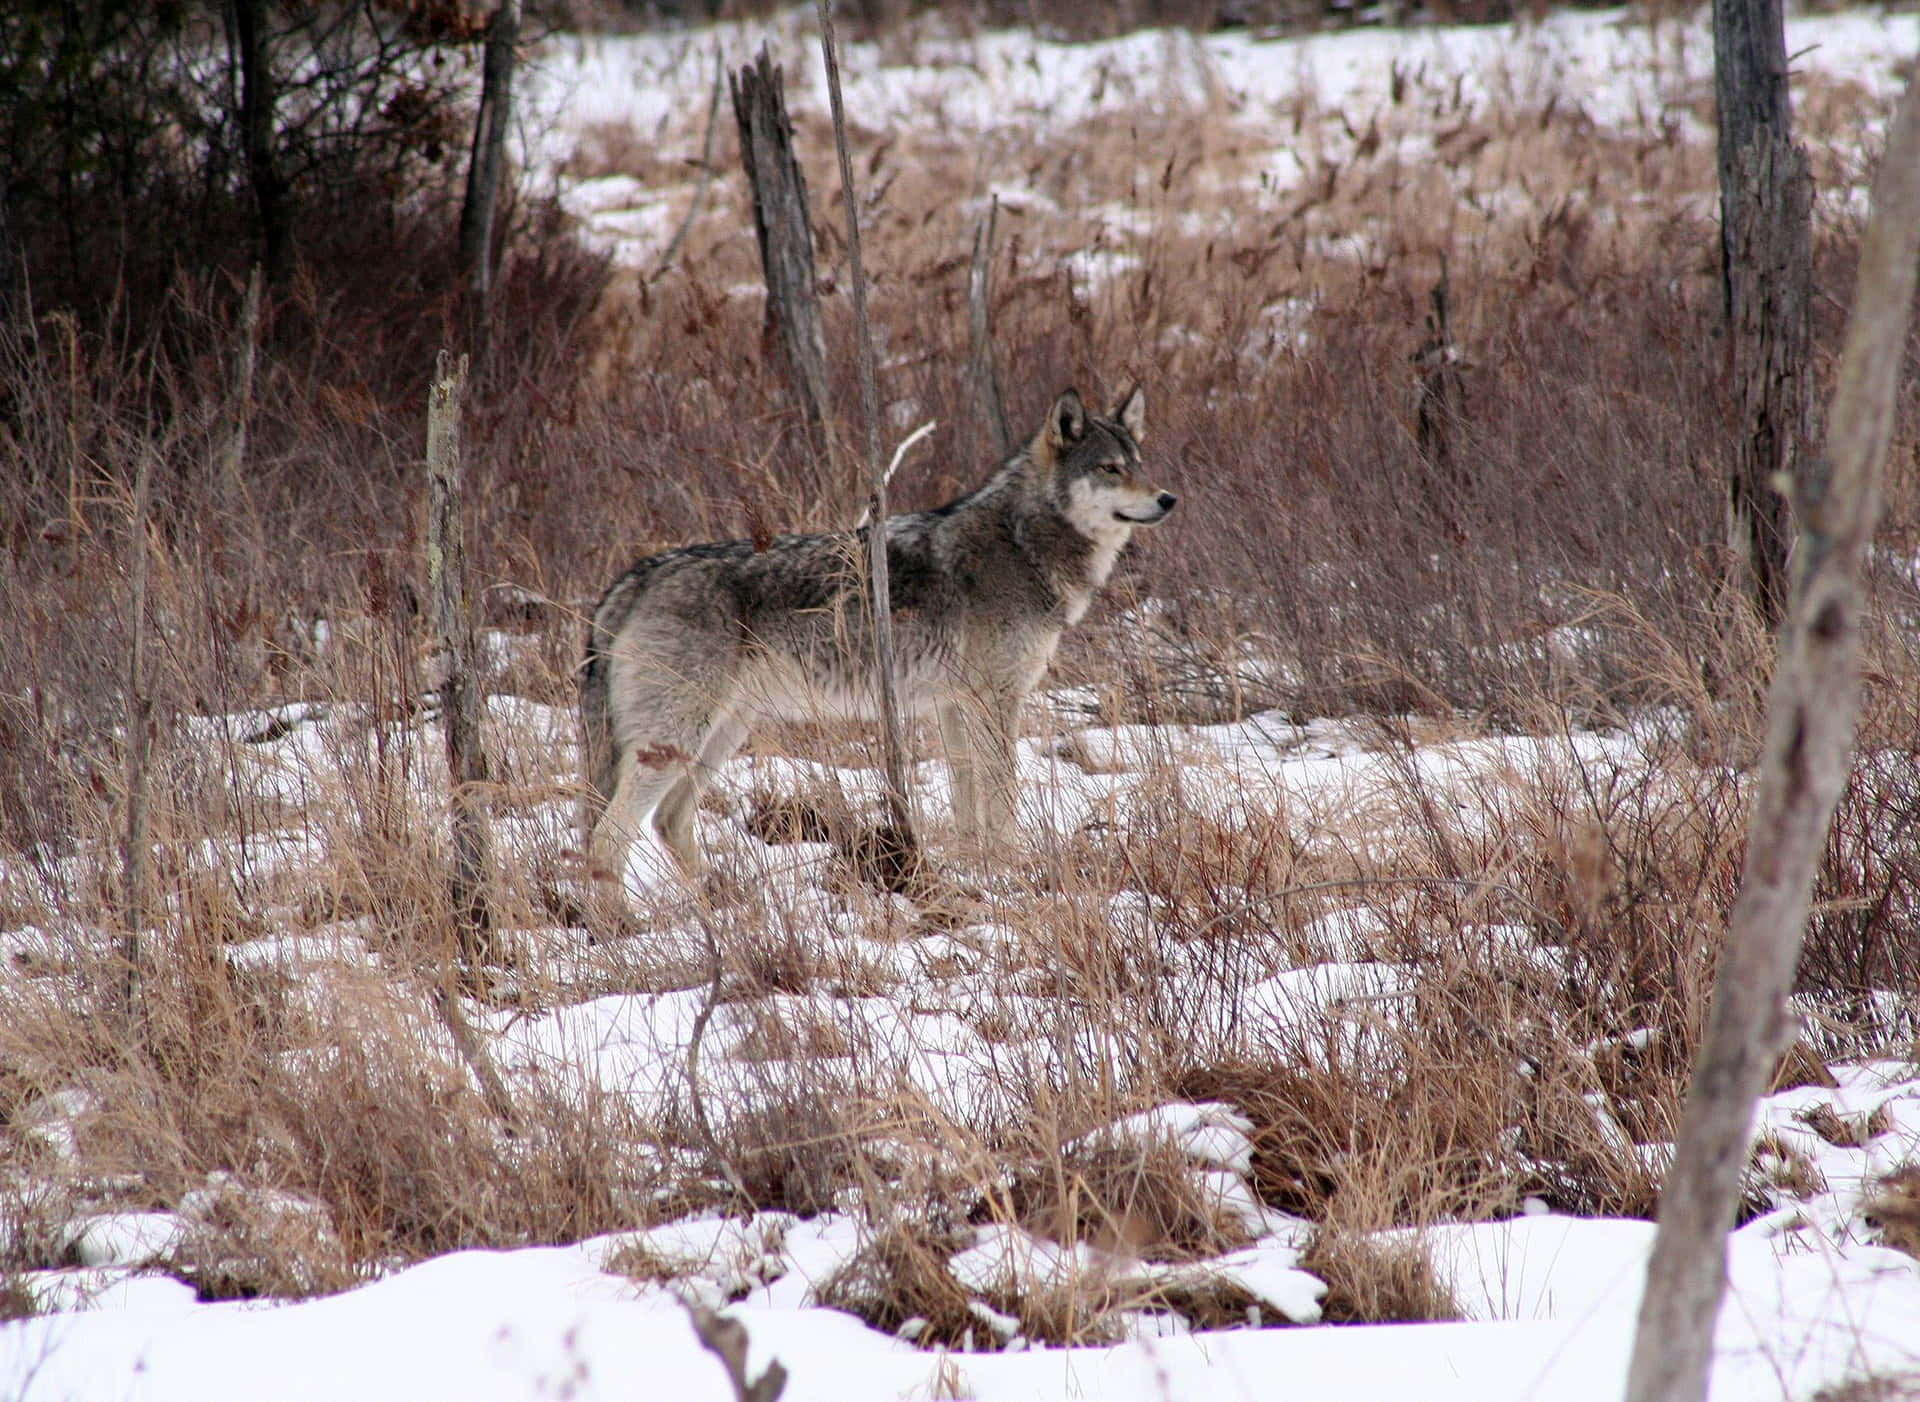 Caption: Majestic Wolf in Snowy Winter Landscape Wallpaper